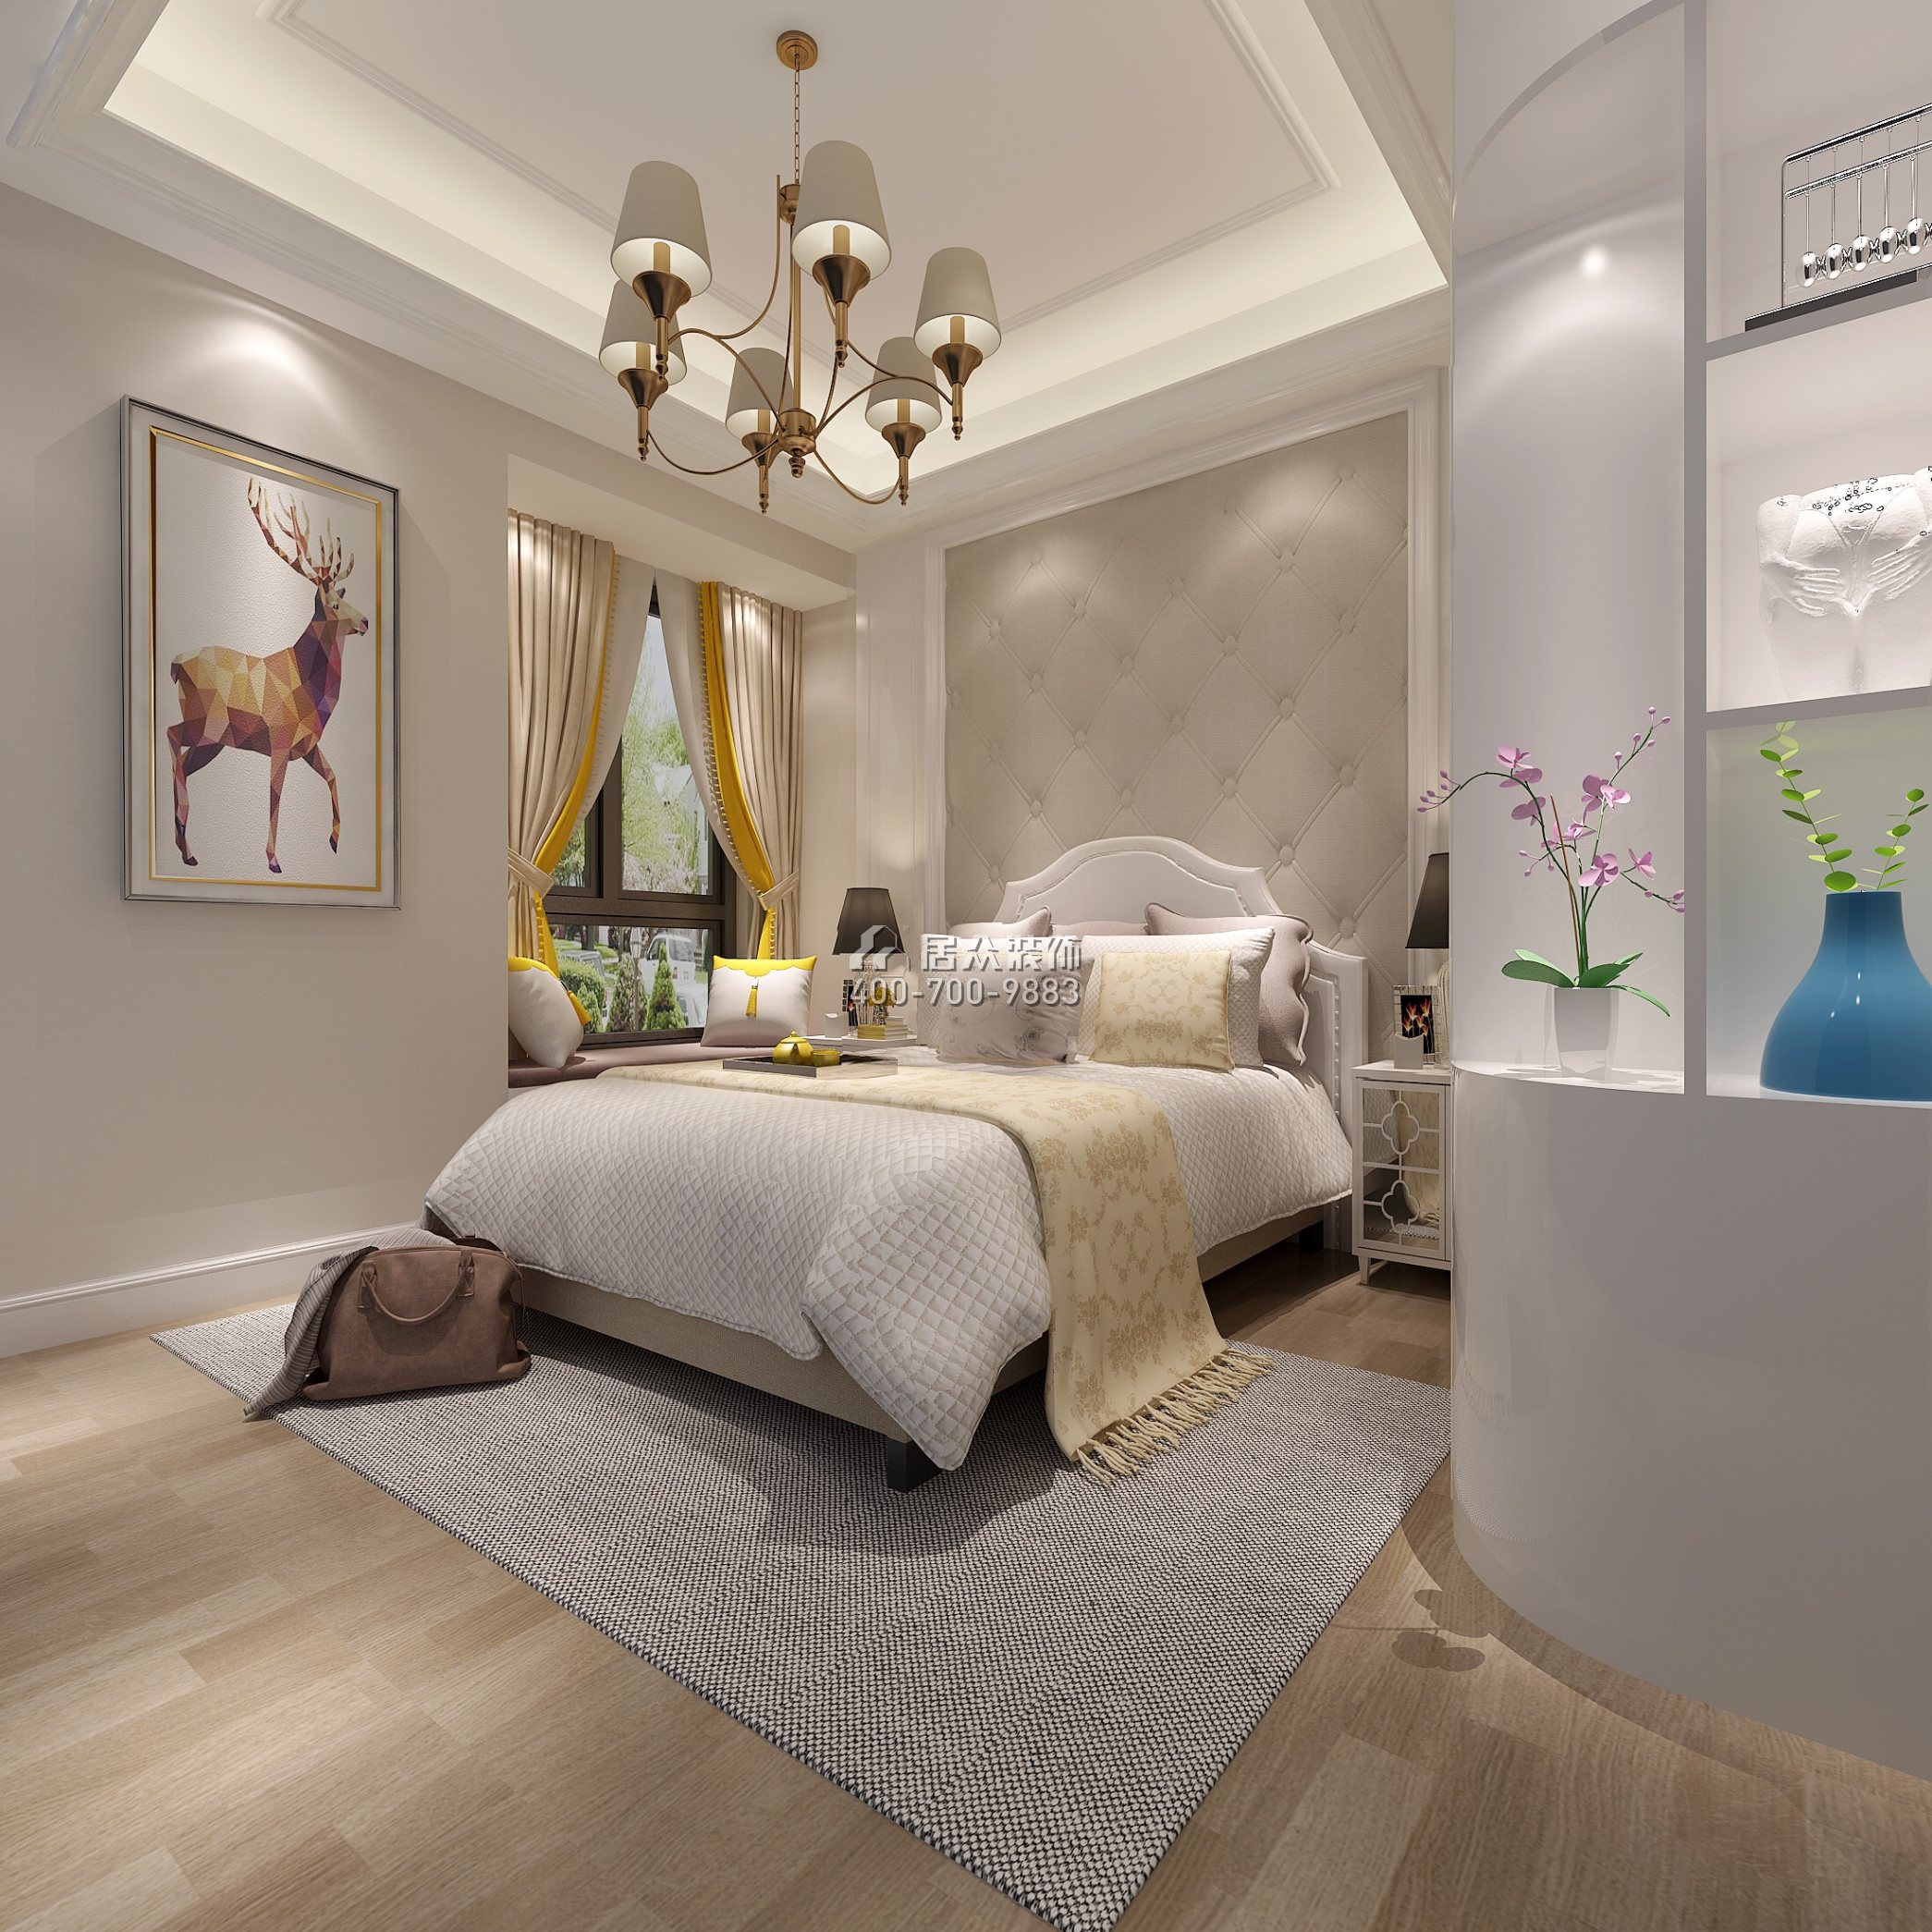 廣州萬達城140平方米美式風格平層戶型臥室裝修效果圖